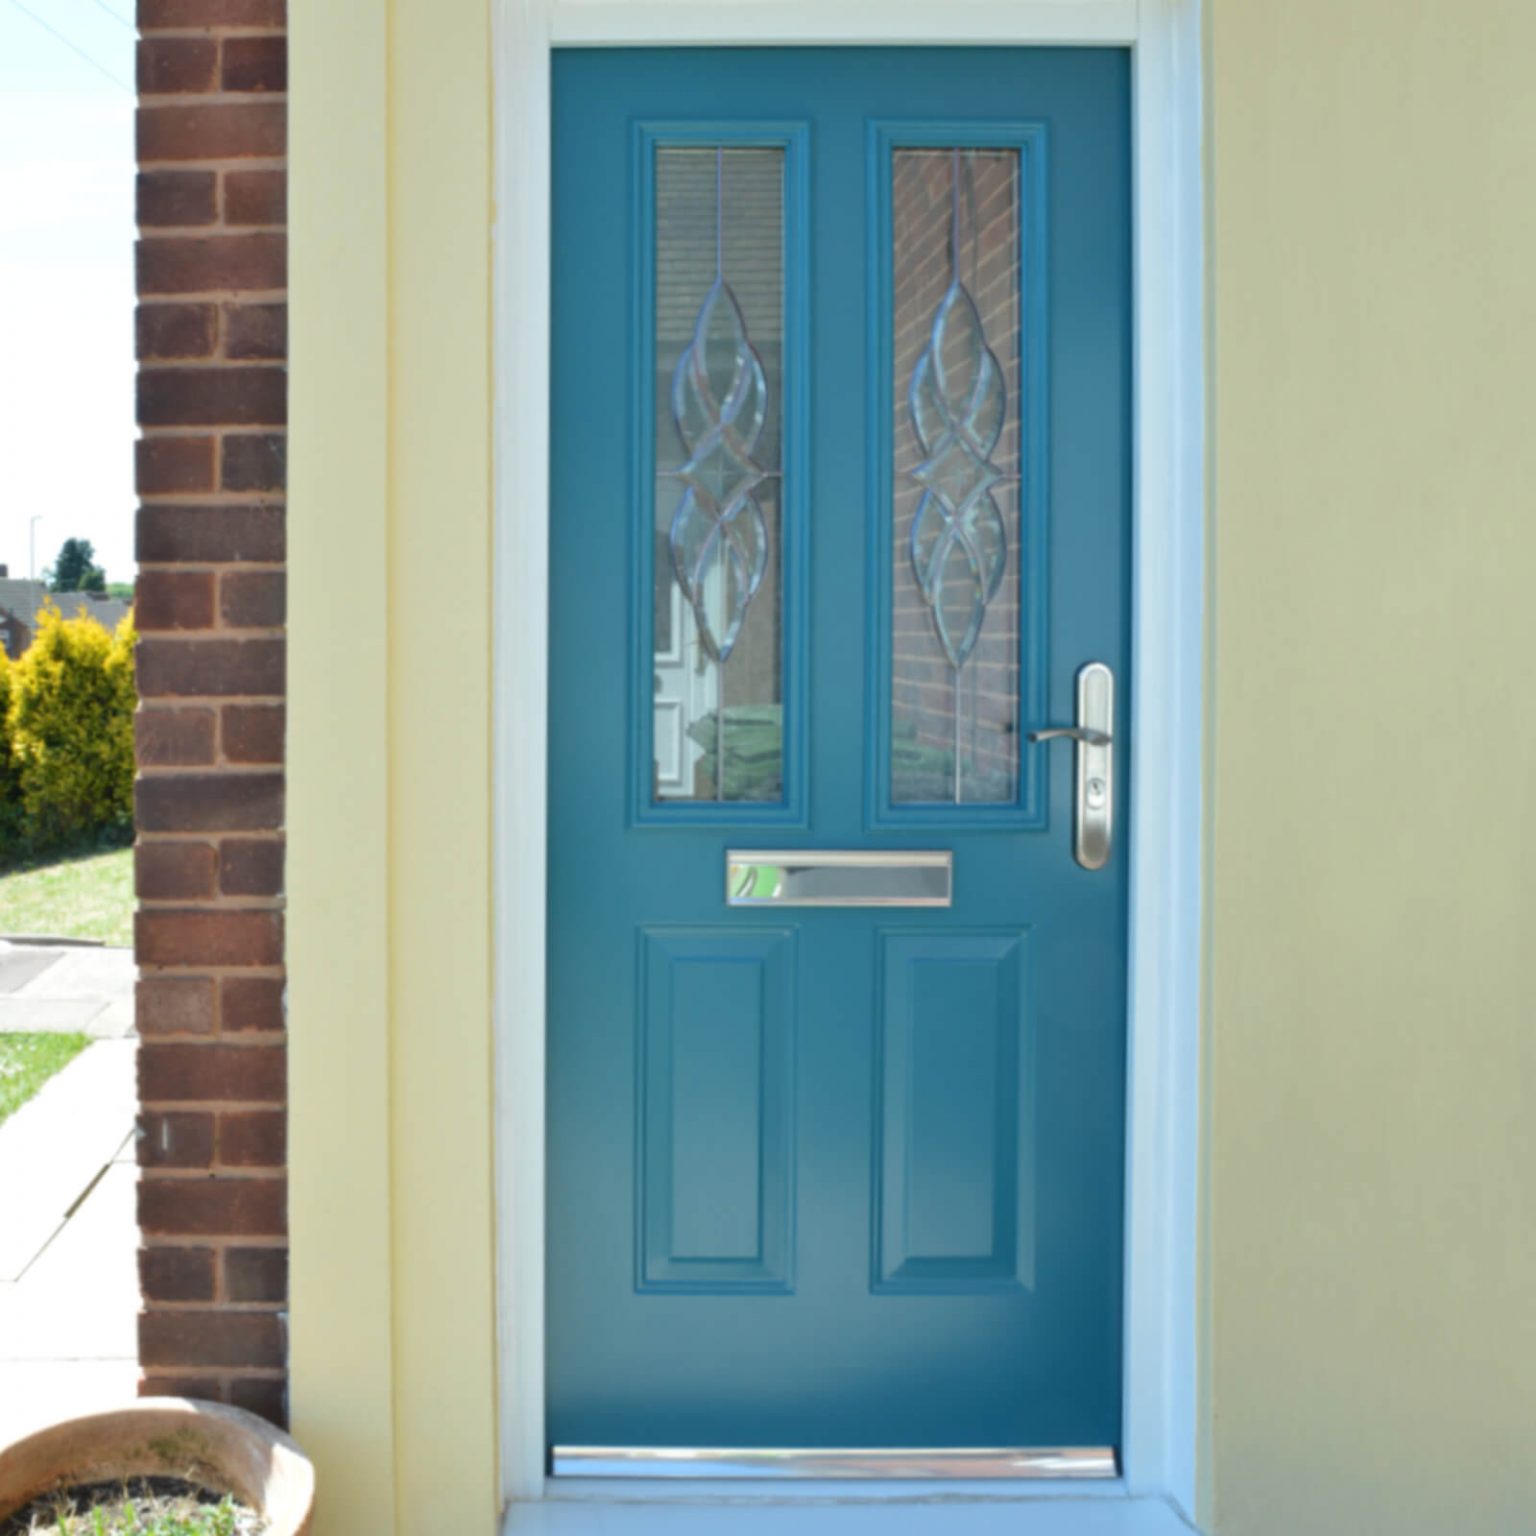 Vastly Improve Your Front Door Security Latham's Steel Security Doors